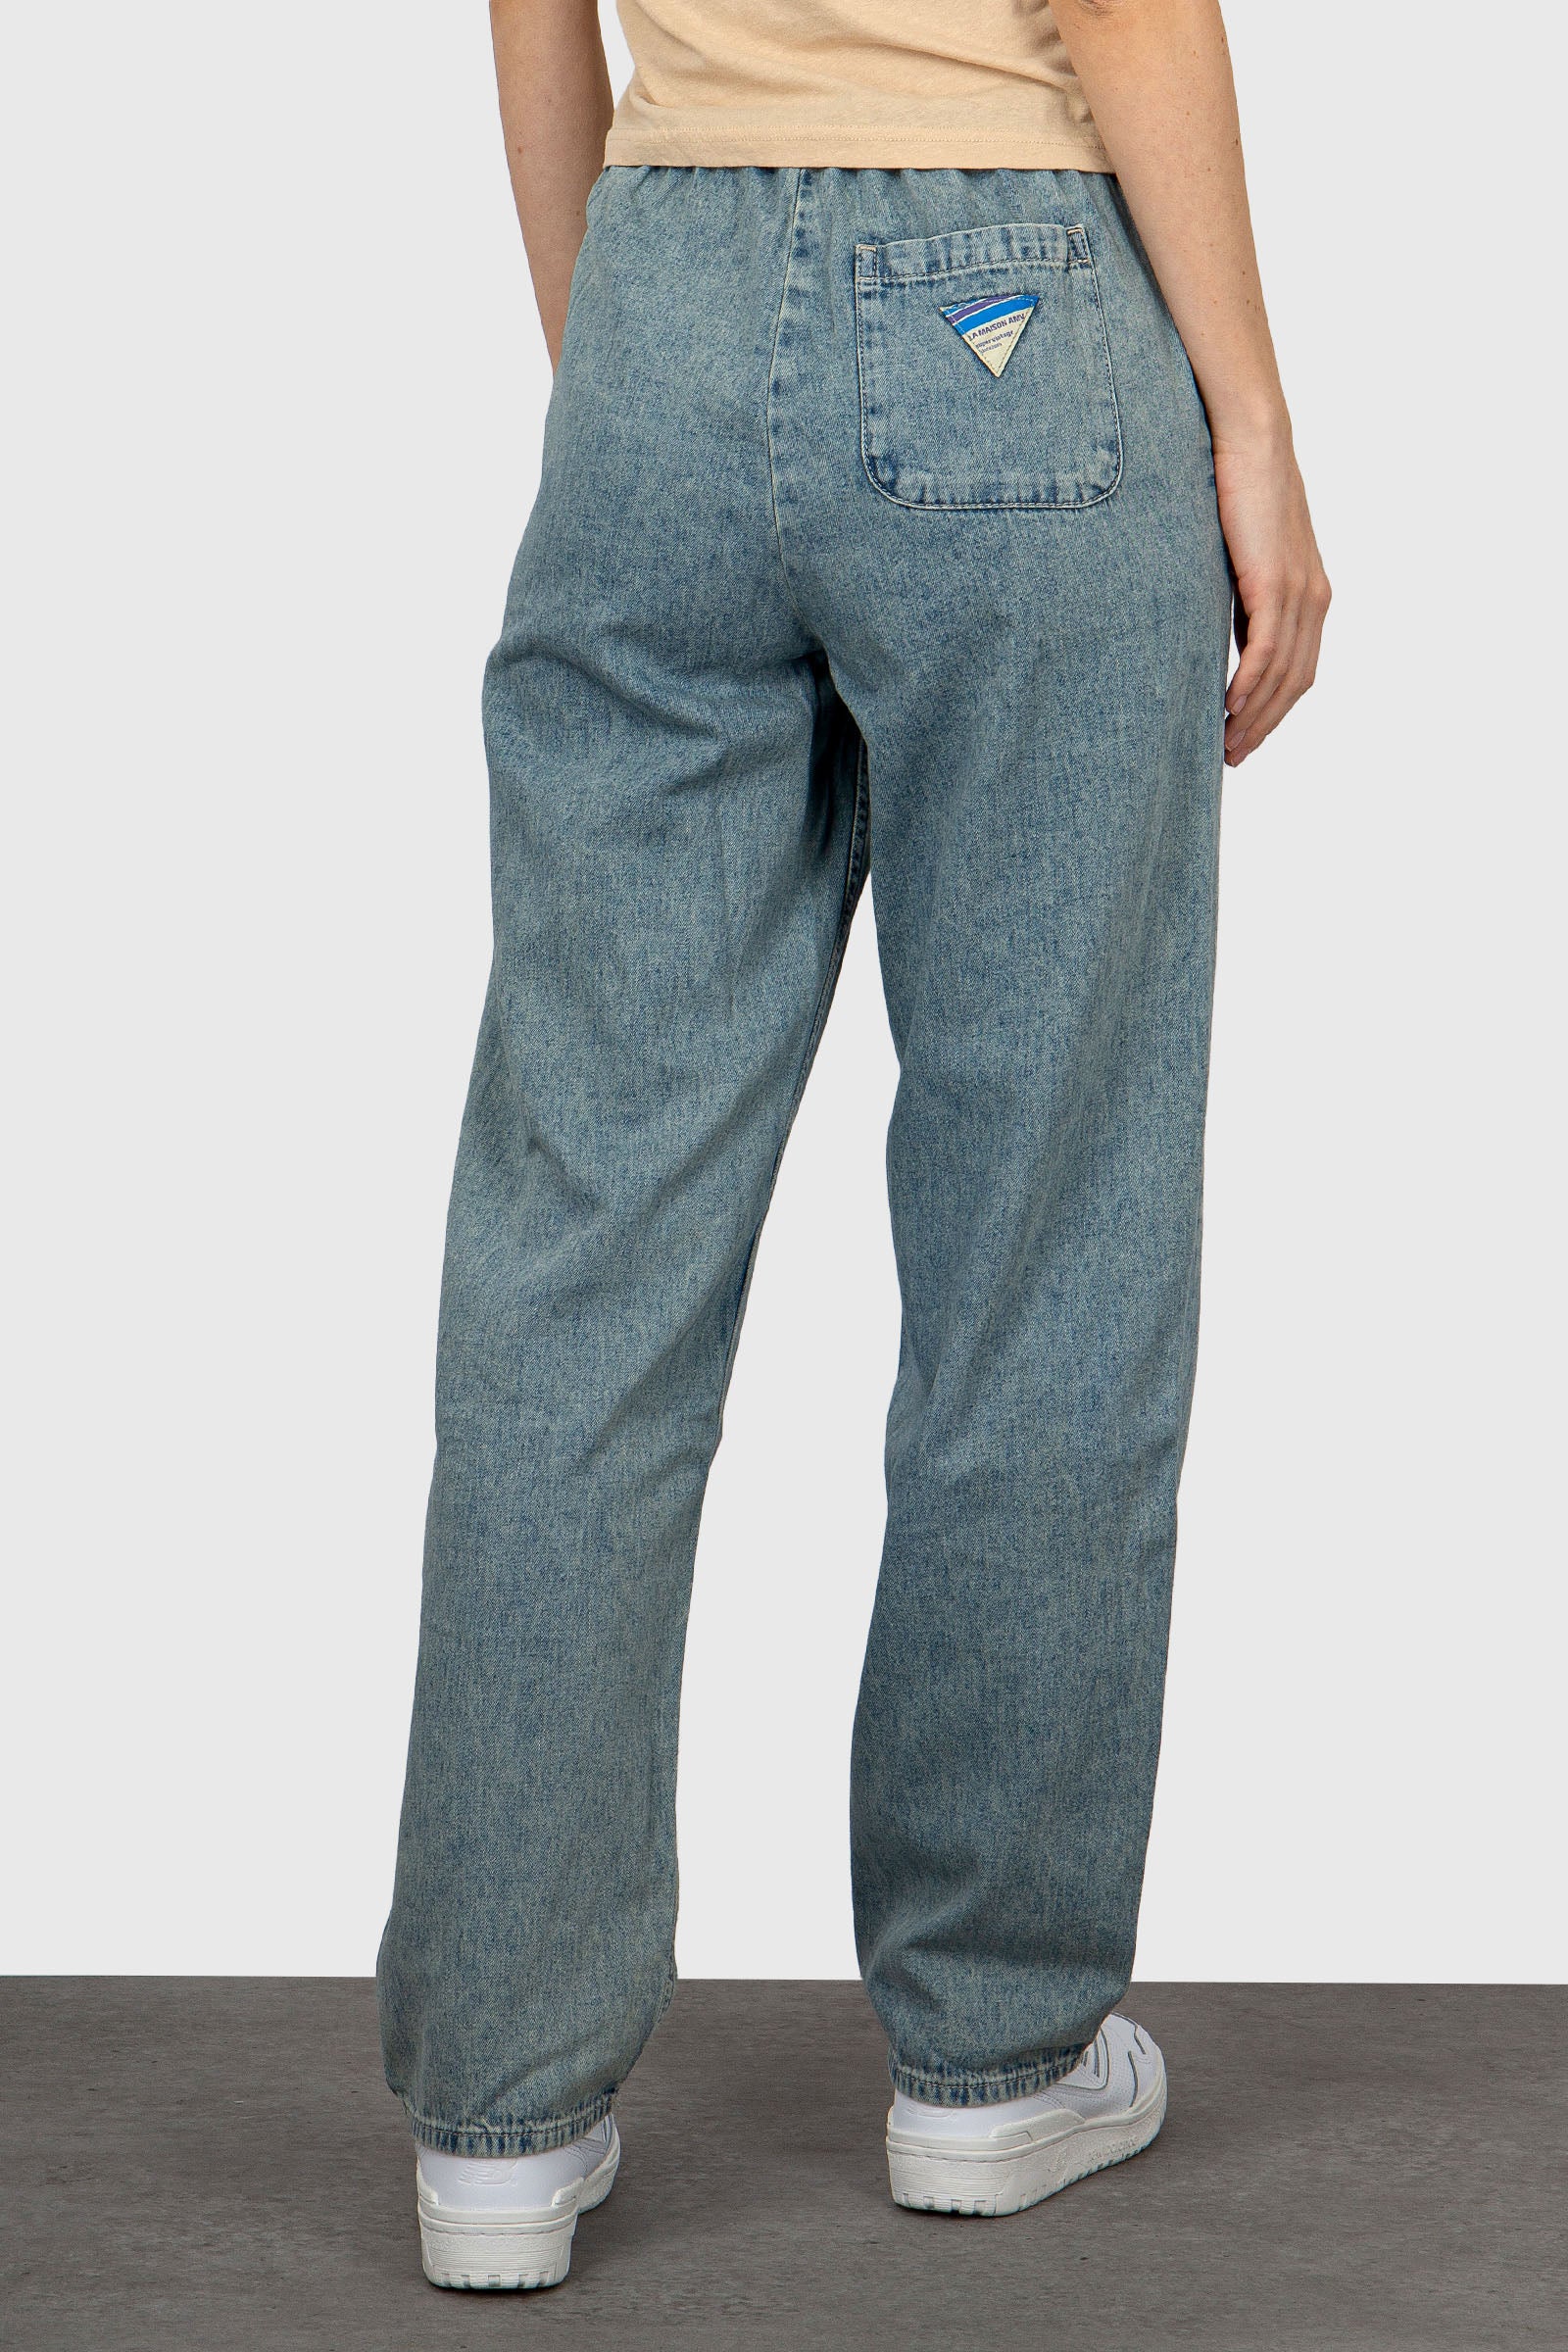 American Vintage Jeans Besobay Light Blue Denim - 3